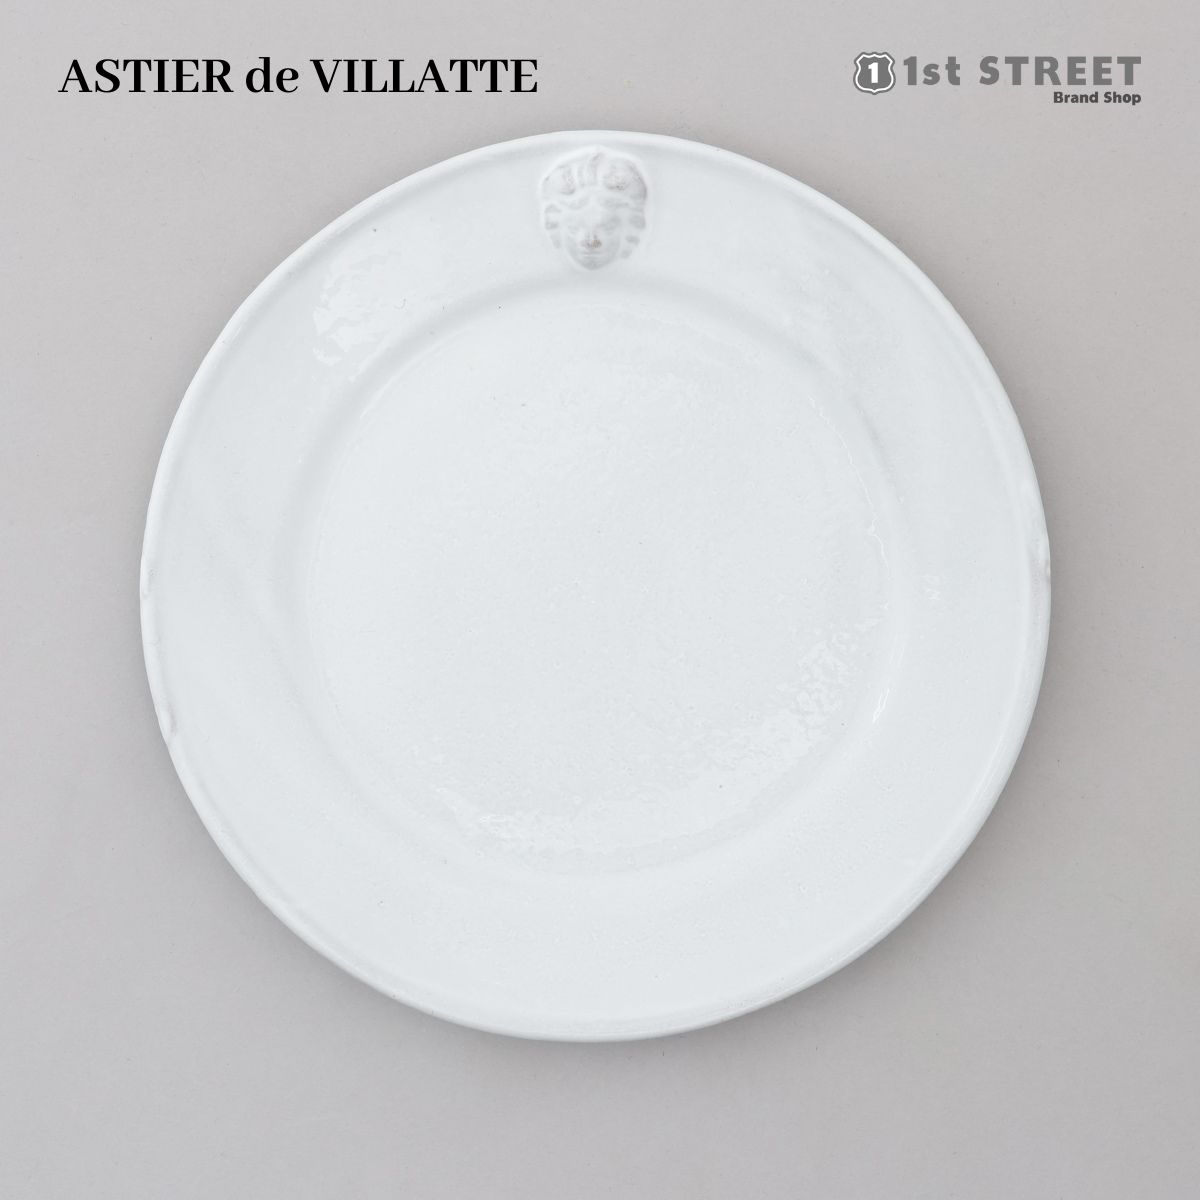 アスティエ・ド・ヴィラット ASTIER de VILLATTE プレート サイズ 